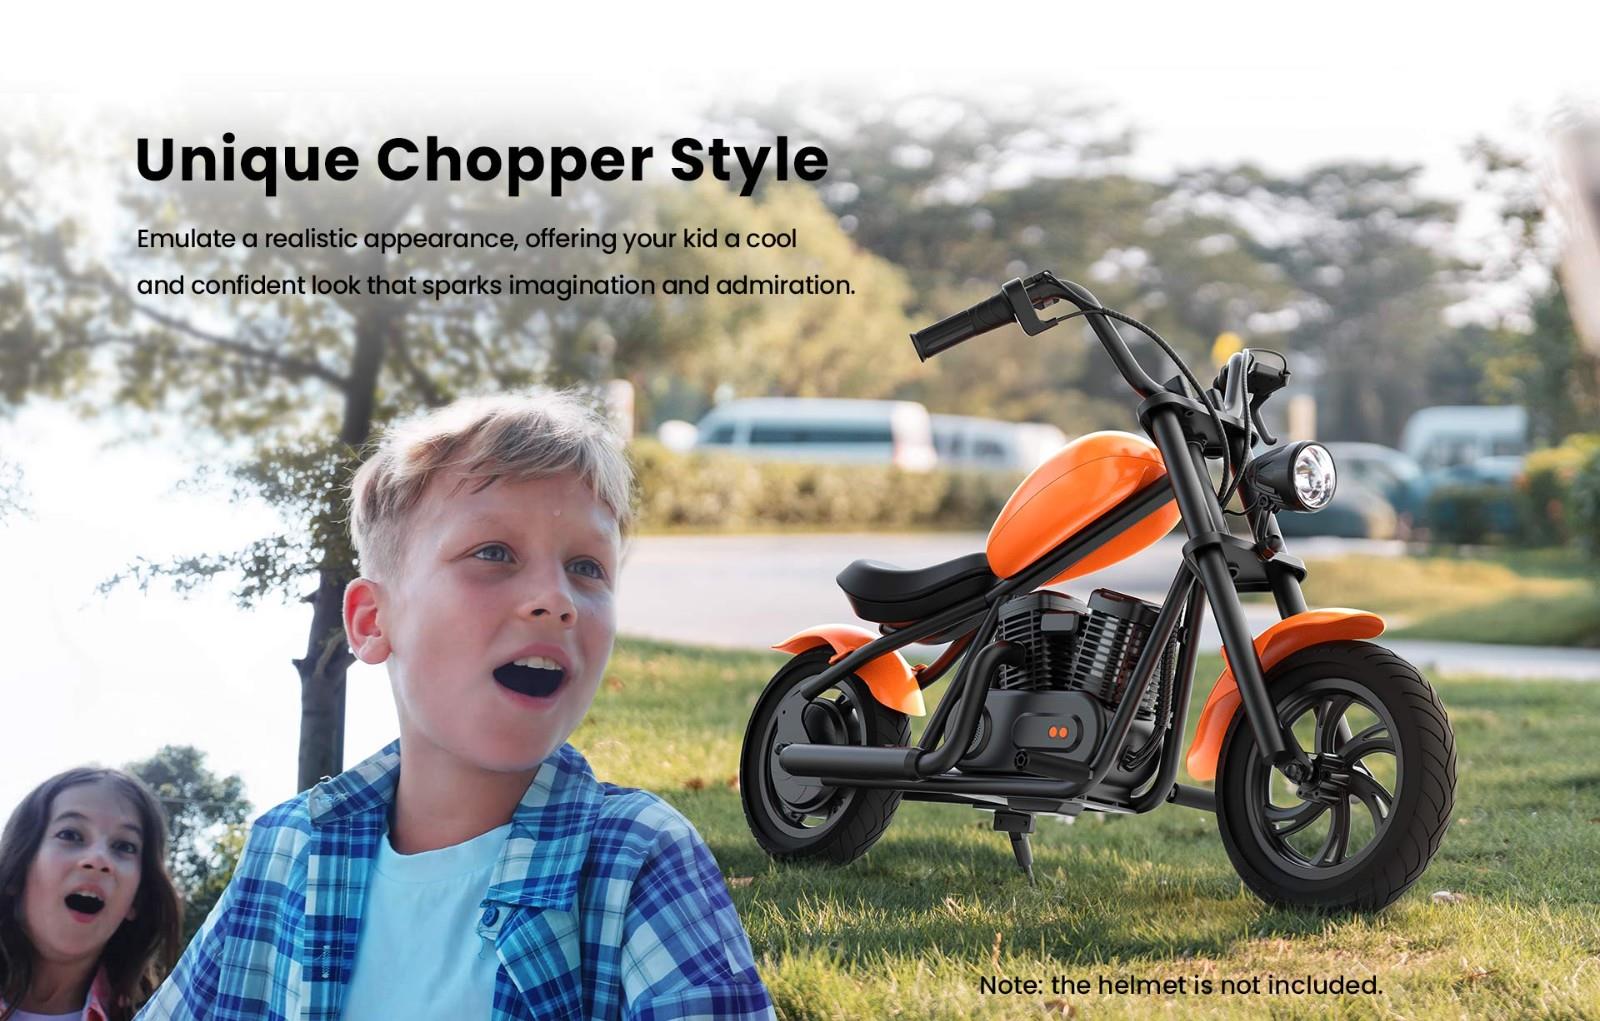 Hyper GOGO Challenger 12 Plus Elektrische Motorfiets voor Kinderen, 12 x 3 Banden, 160W, 5.2Ah, Luidspreker - Oranje